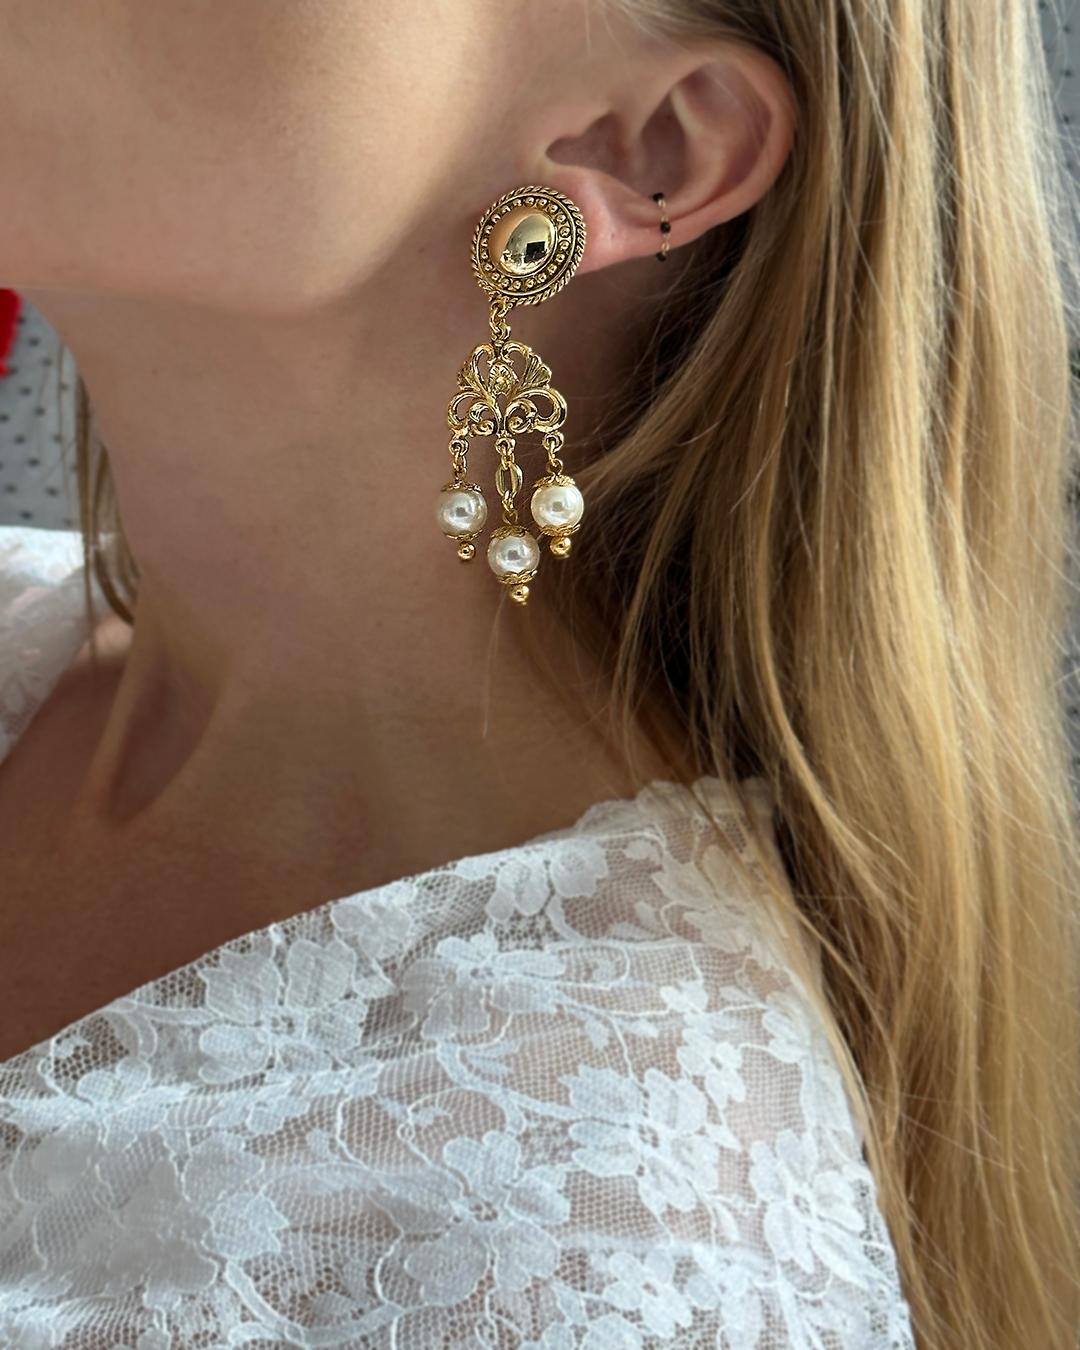 VERY BREEZY präsentiert: Diese Vintage-Perlenohrringe sind so dramatisch und feminin zugleich. Sie wurden in Europa hergestellt und vermitteln sofort ein romantisches Gefühl. Sie weisen ein barockes, vergoldetes Motiv mit drei Perlentropfen auf. Die